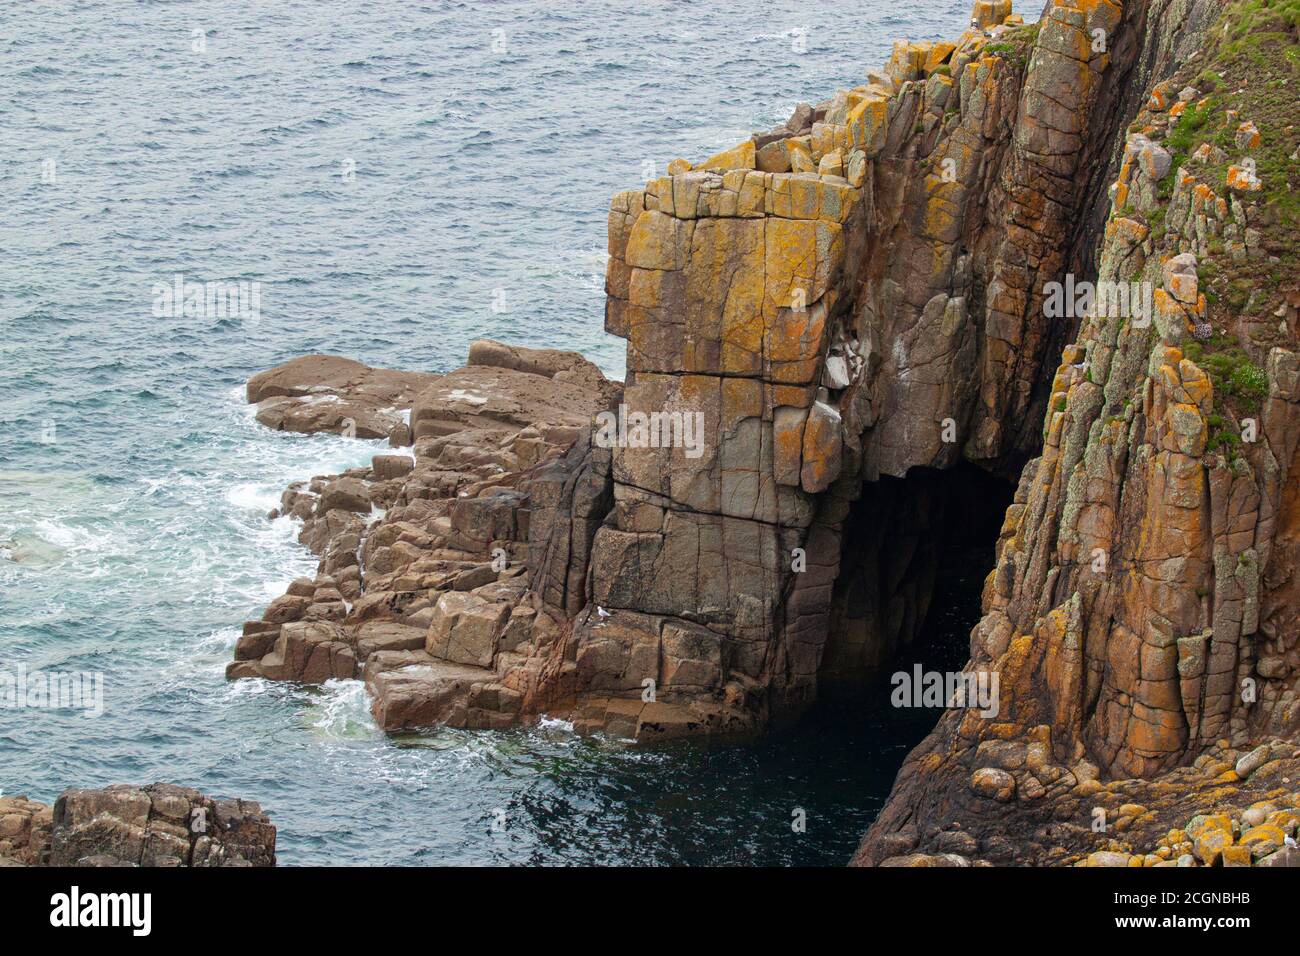 Sulla costa rocciosa atlantica della Cornovaglia, ci sono numerosi promontori con formazioni rocciose panoramiche. Le rocce mussose incrinate sembrano sbalorditive Foto Stock